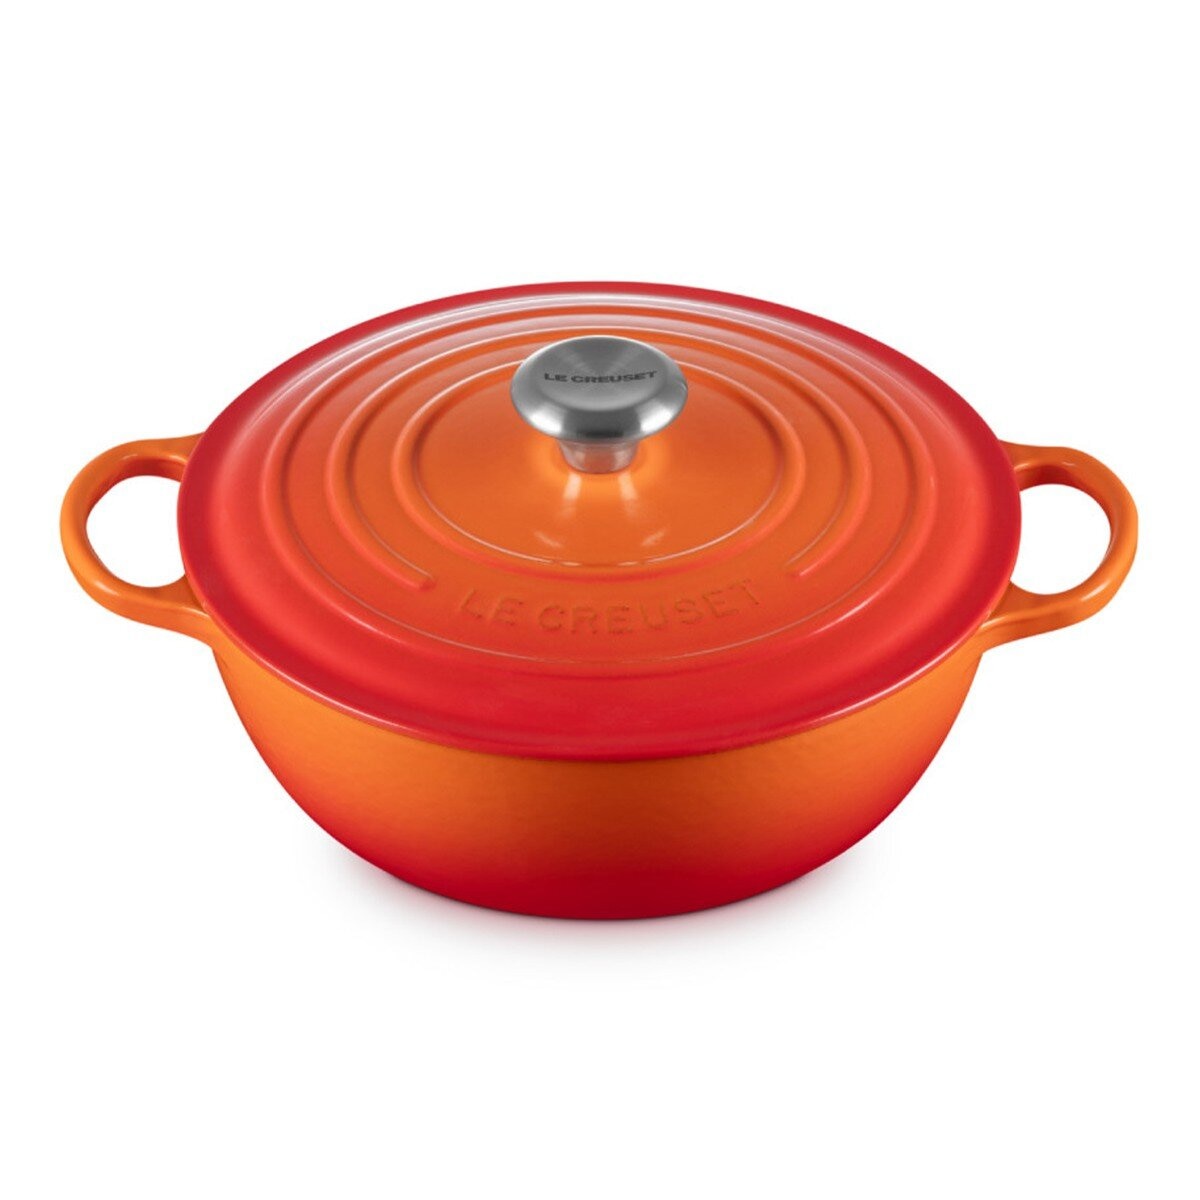 Le Creuset 琺瑯鑄鐵媽咪鍋 含鋼頭鍋蓋 28公分 火焰橘